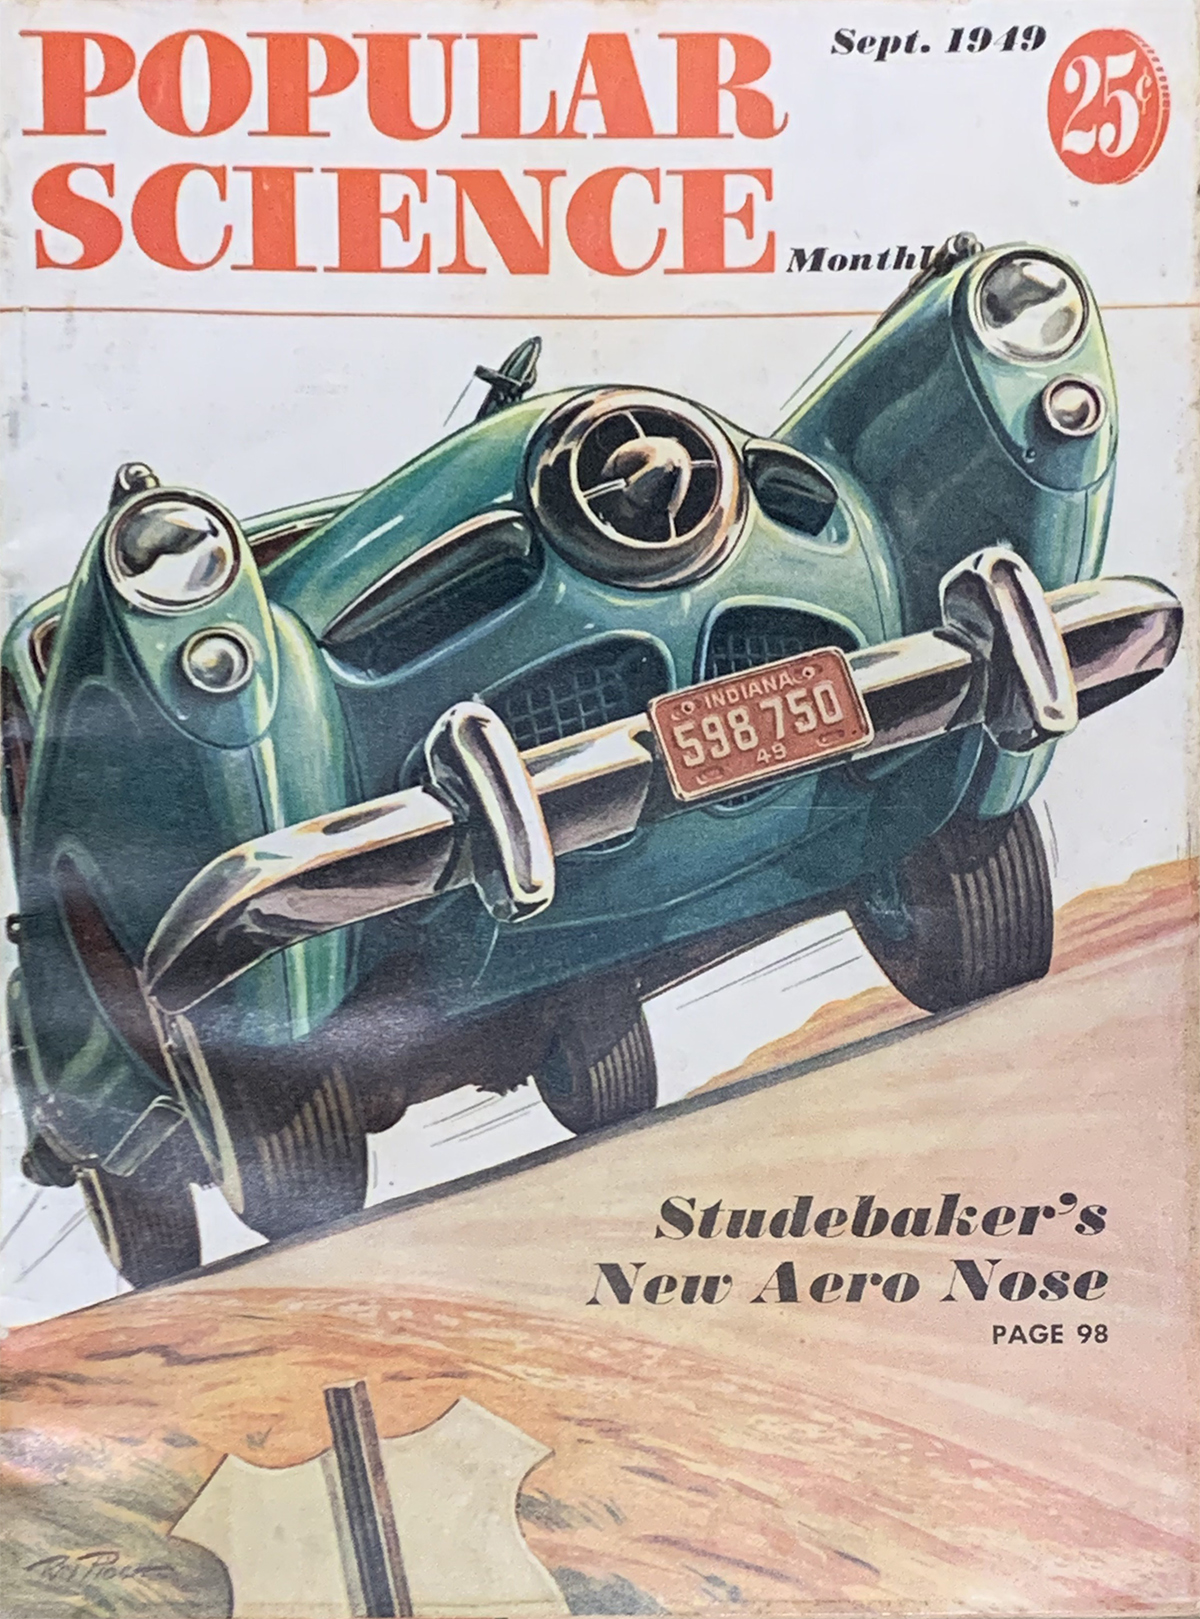 1949 Popular Science